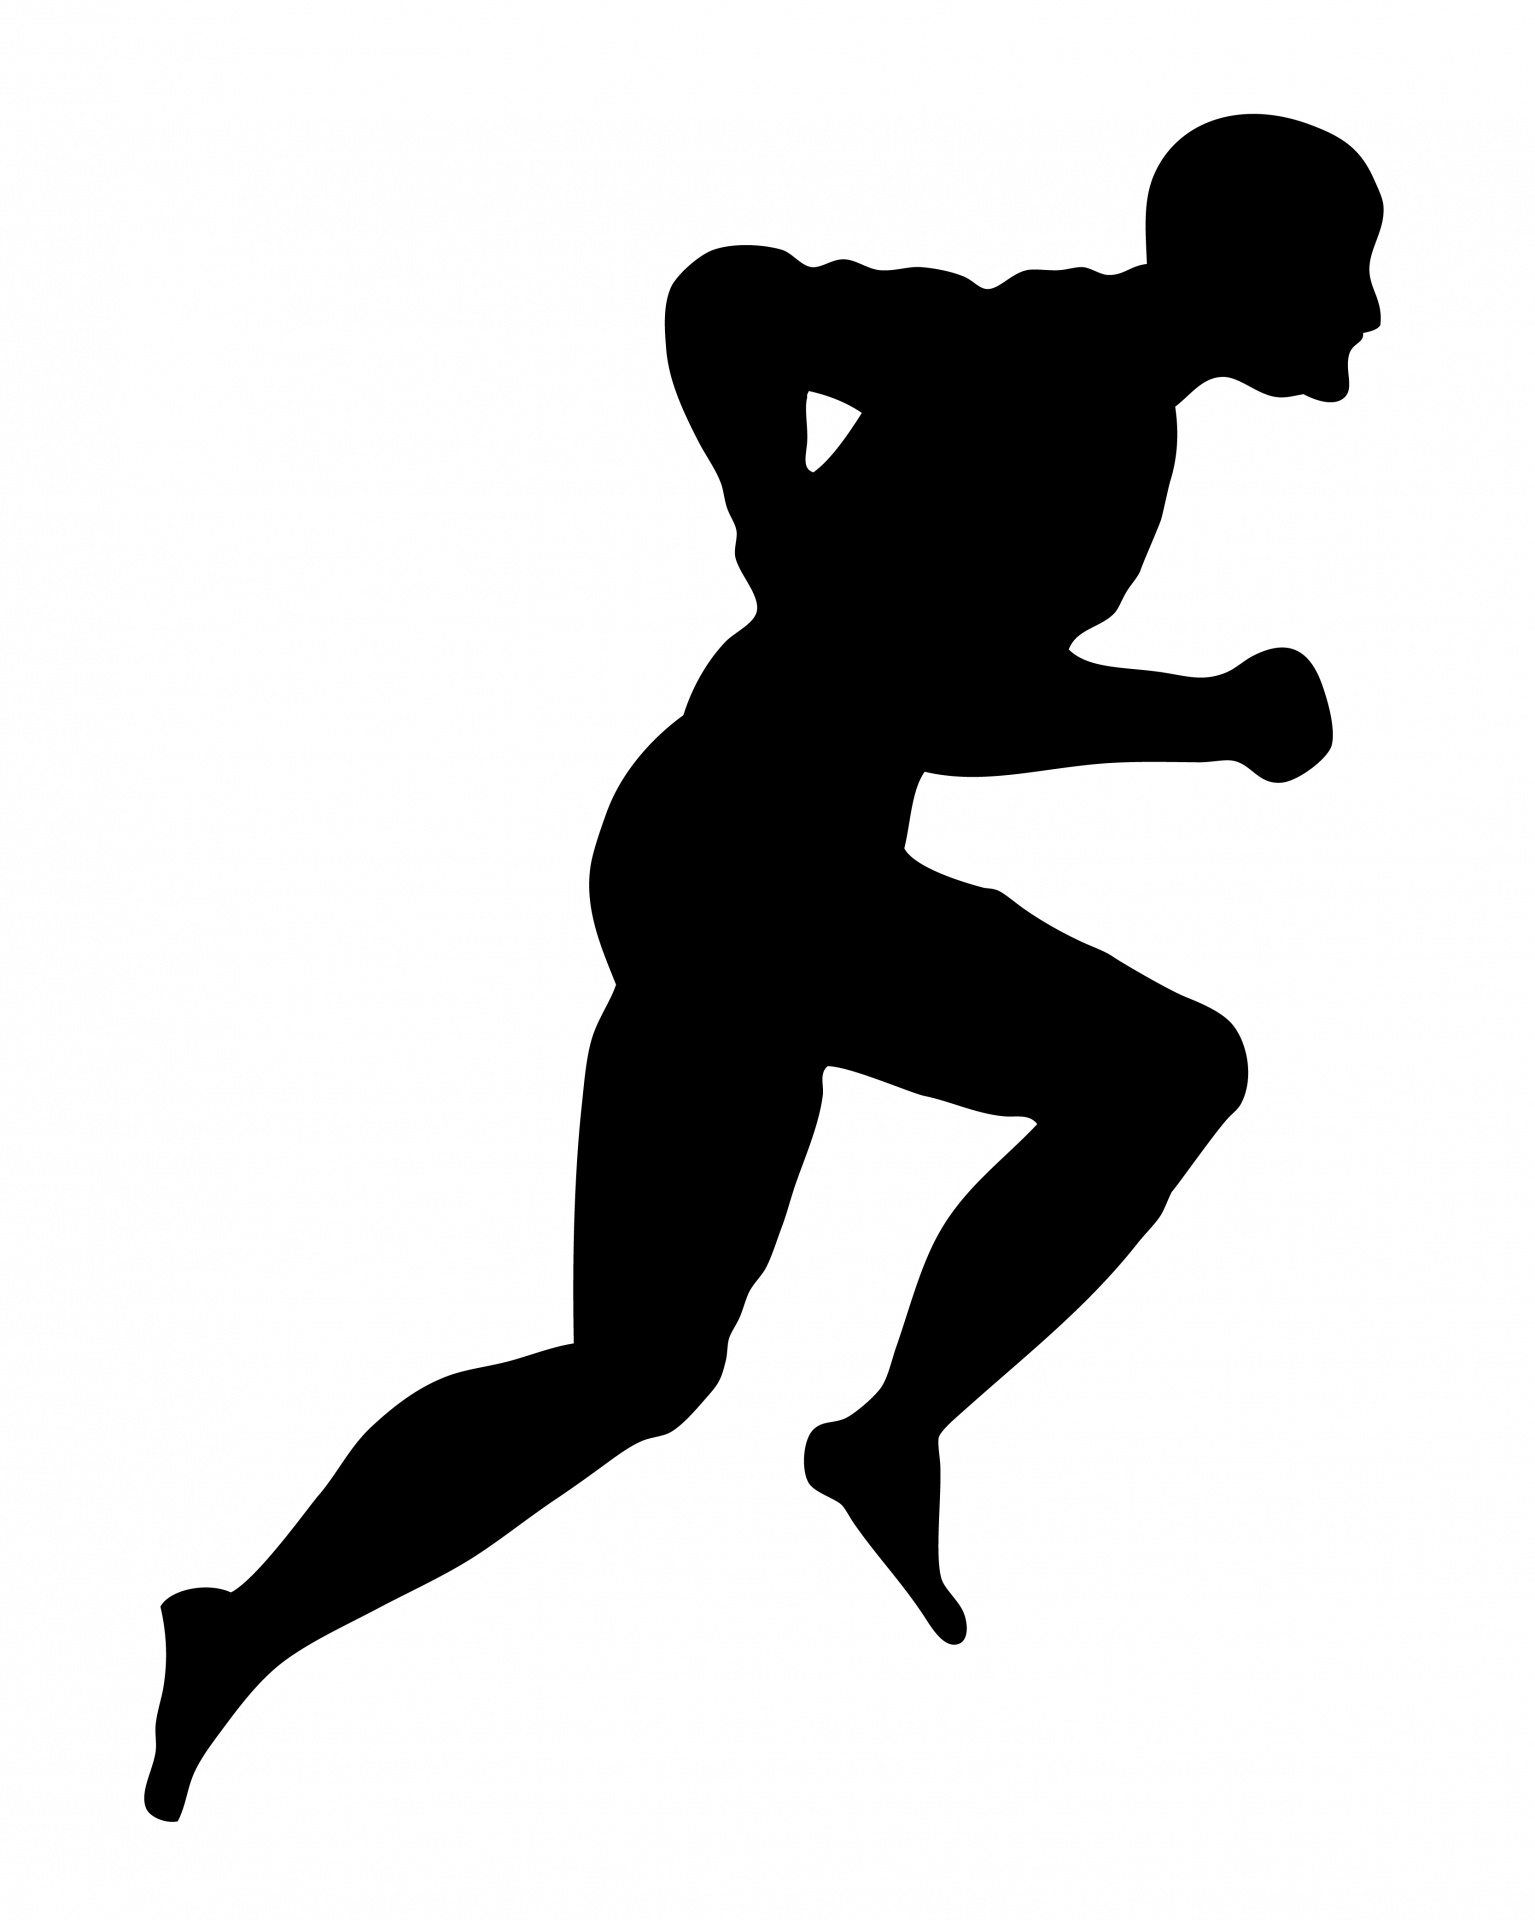 Running man silhouette free. Runner clipart male runner